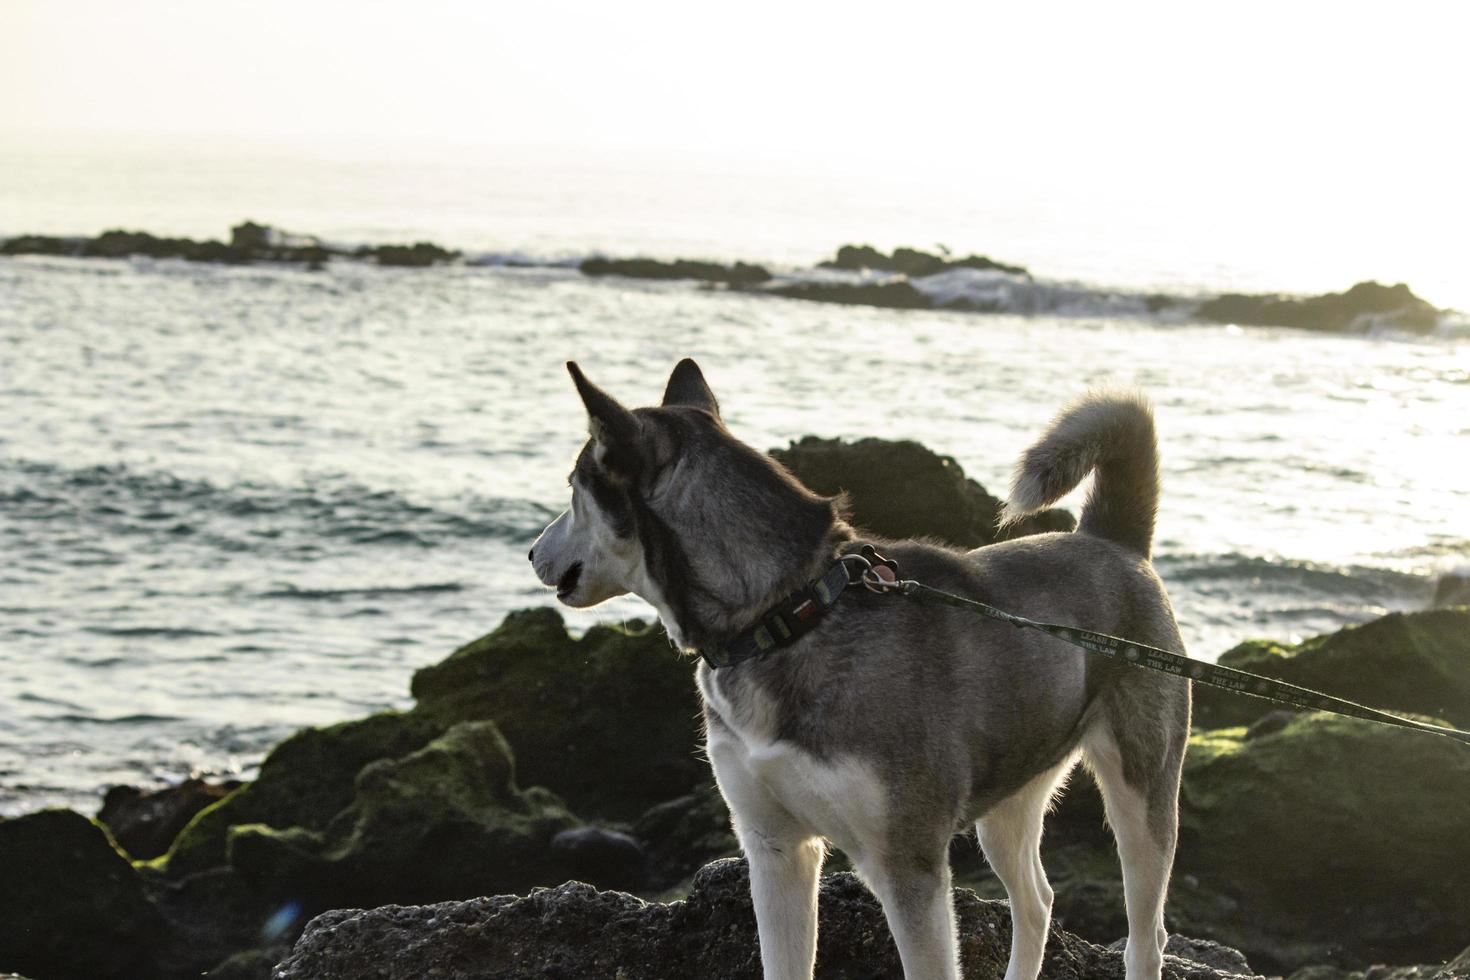 cane in spiaggia - newport ca 2018 foto